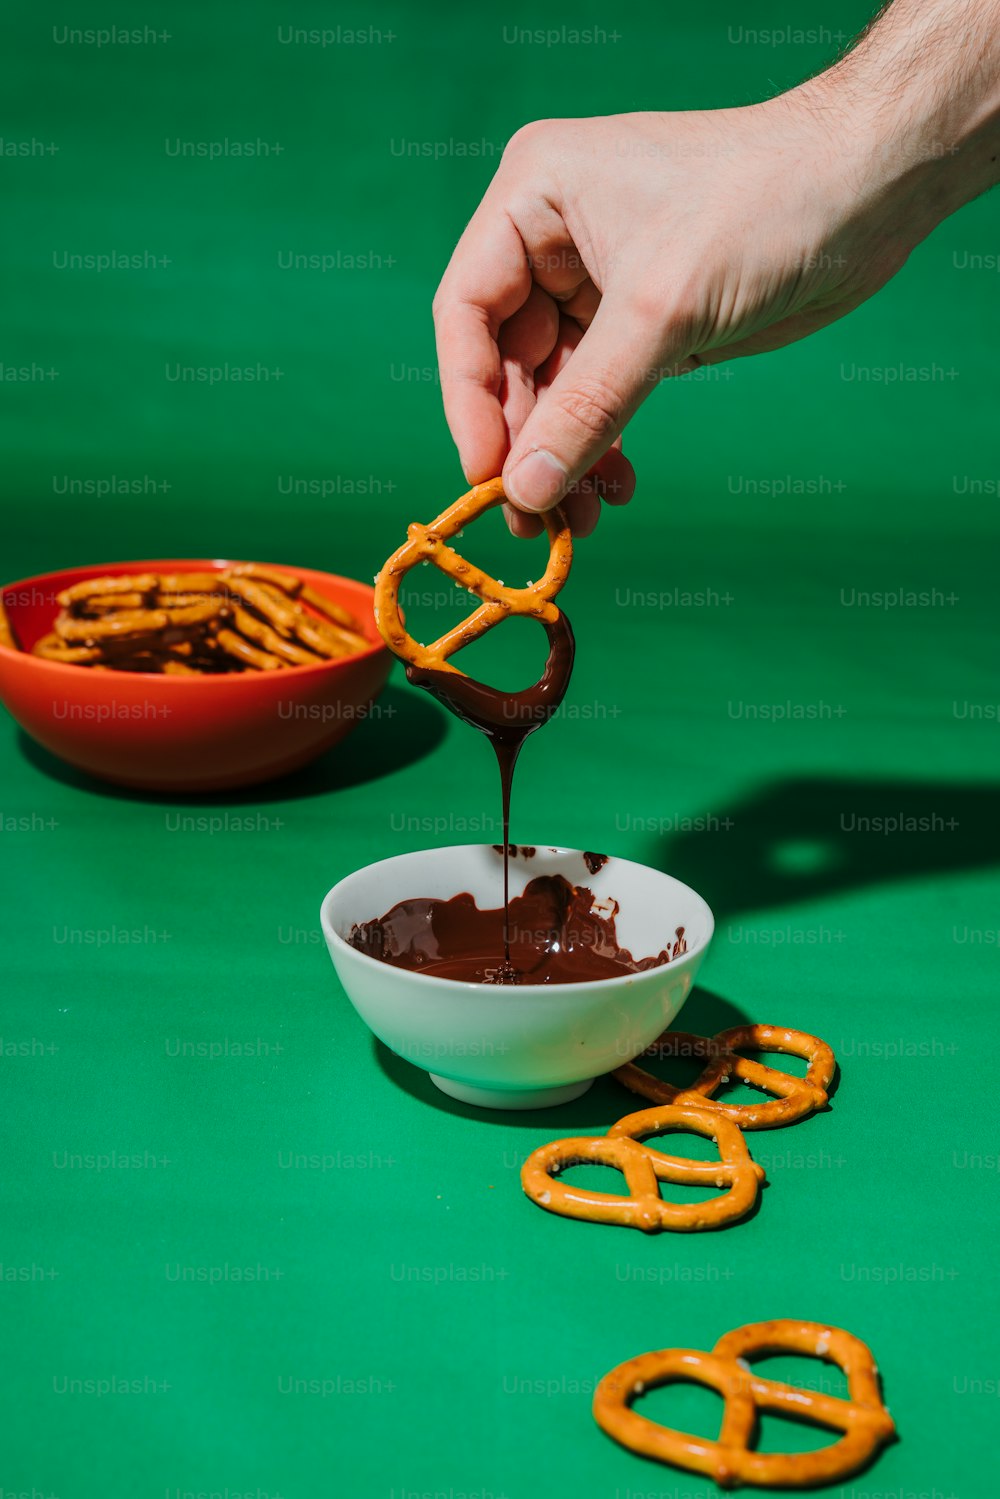 Una persona sumergiendo chocolate en un tazón de pretzels